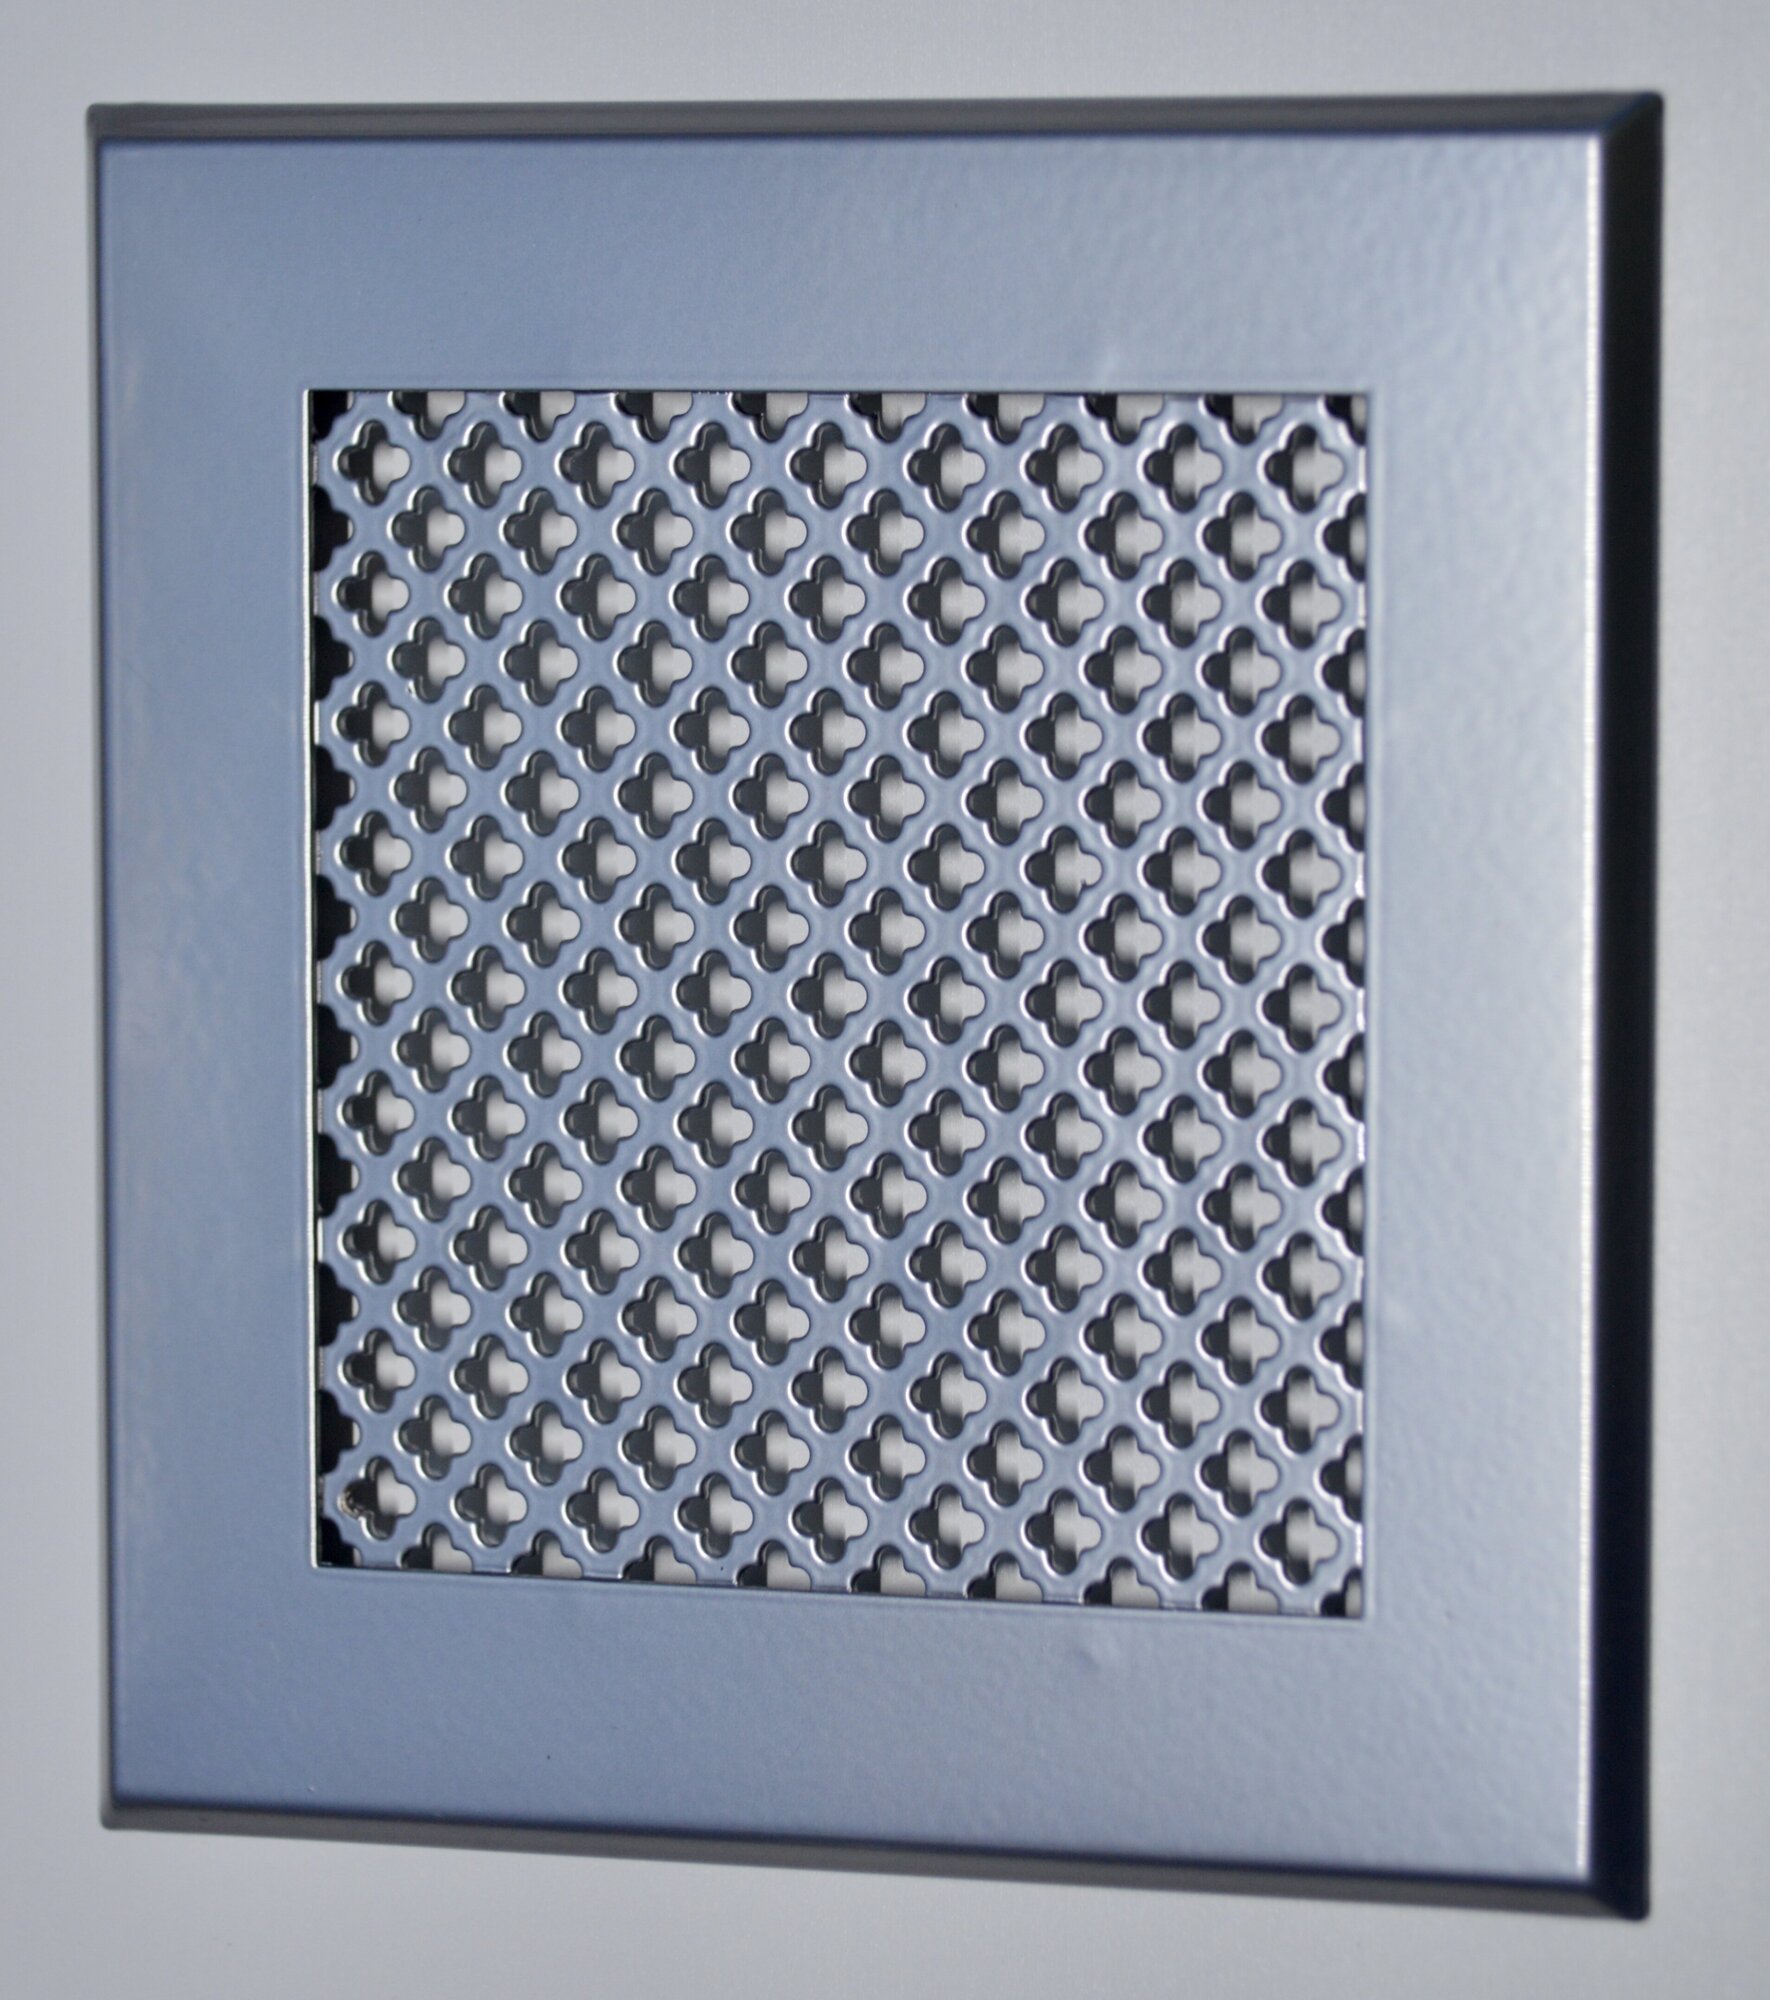 Вентиляционная решетка металлическая на магнитах 150х150мм, тип перфорации мелкий цветок, хром